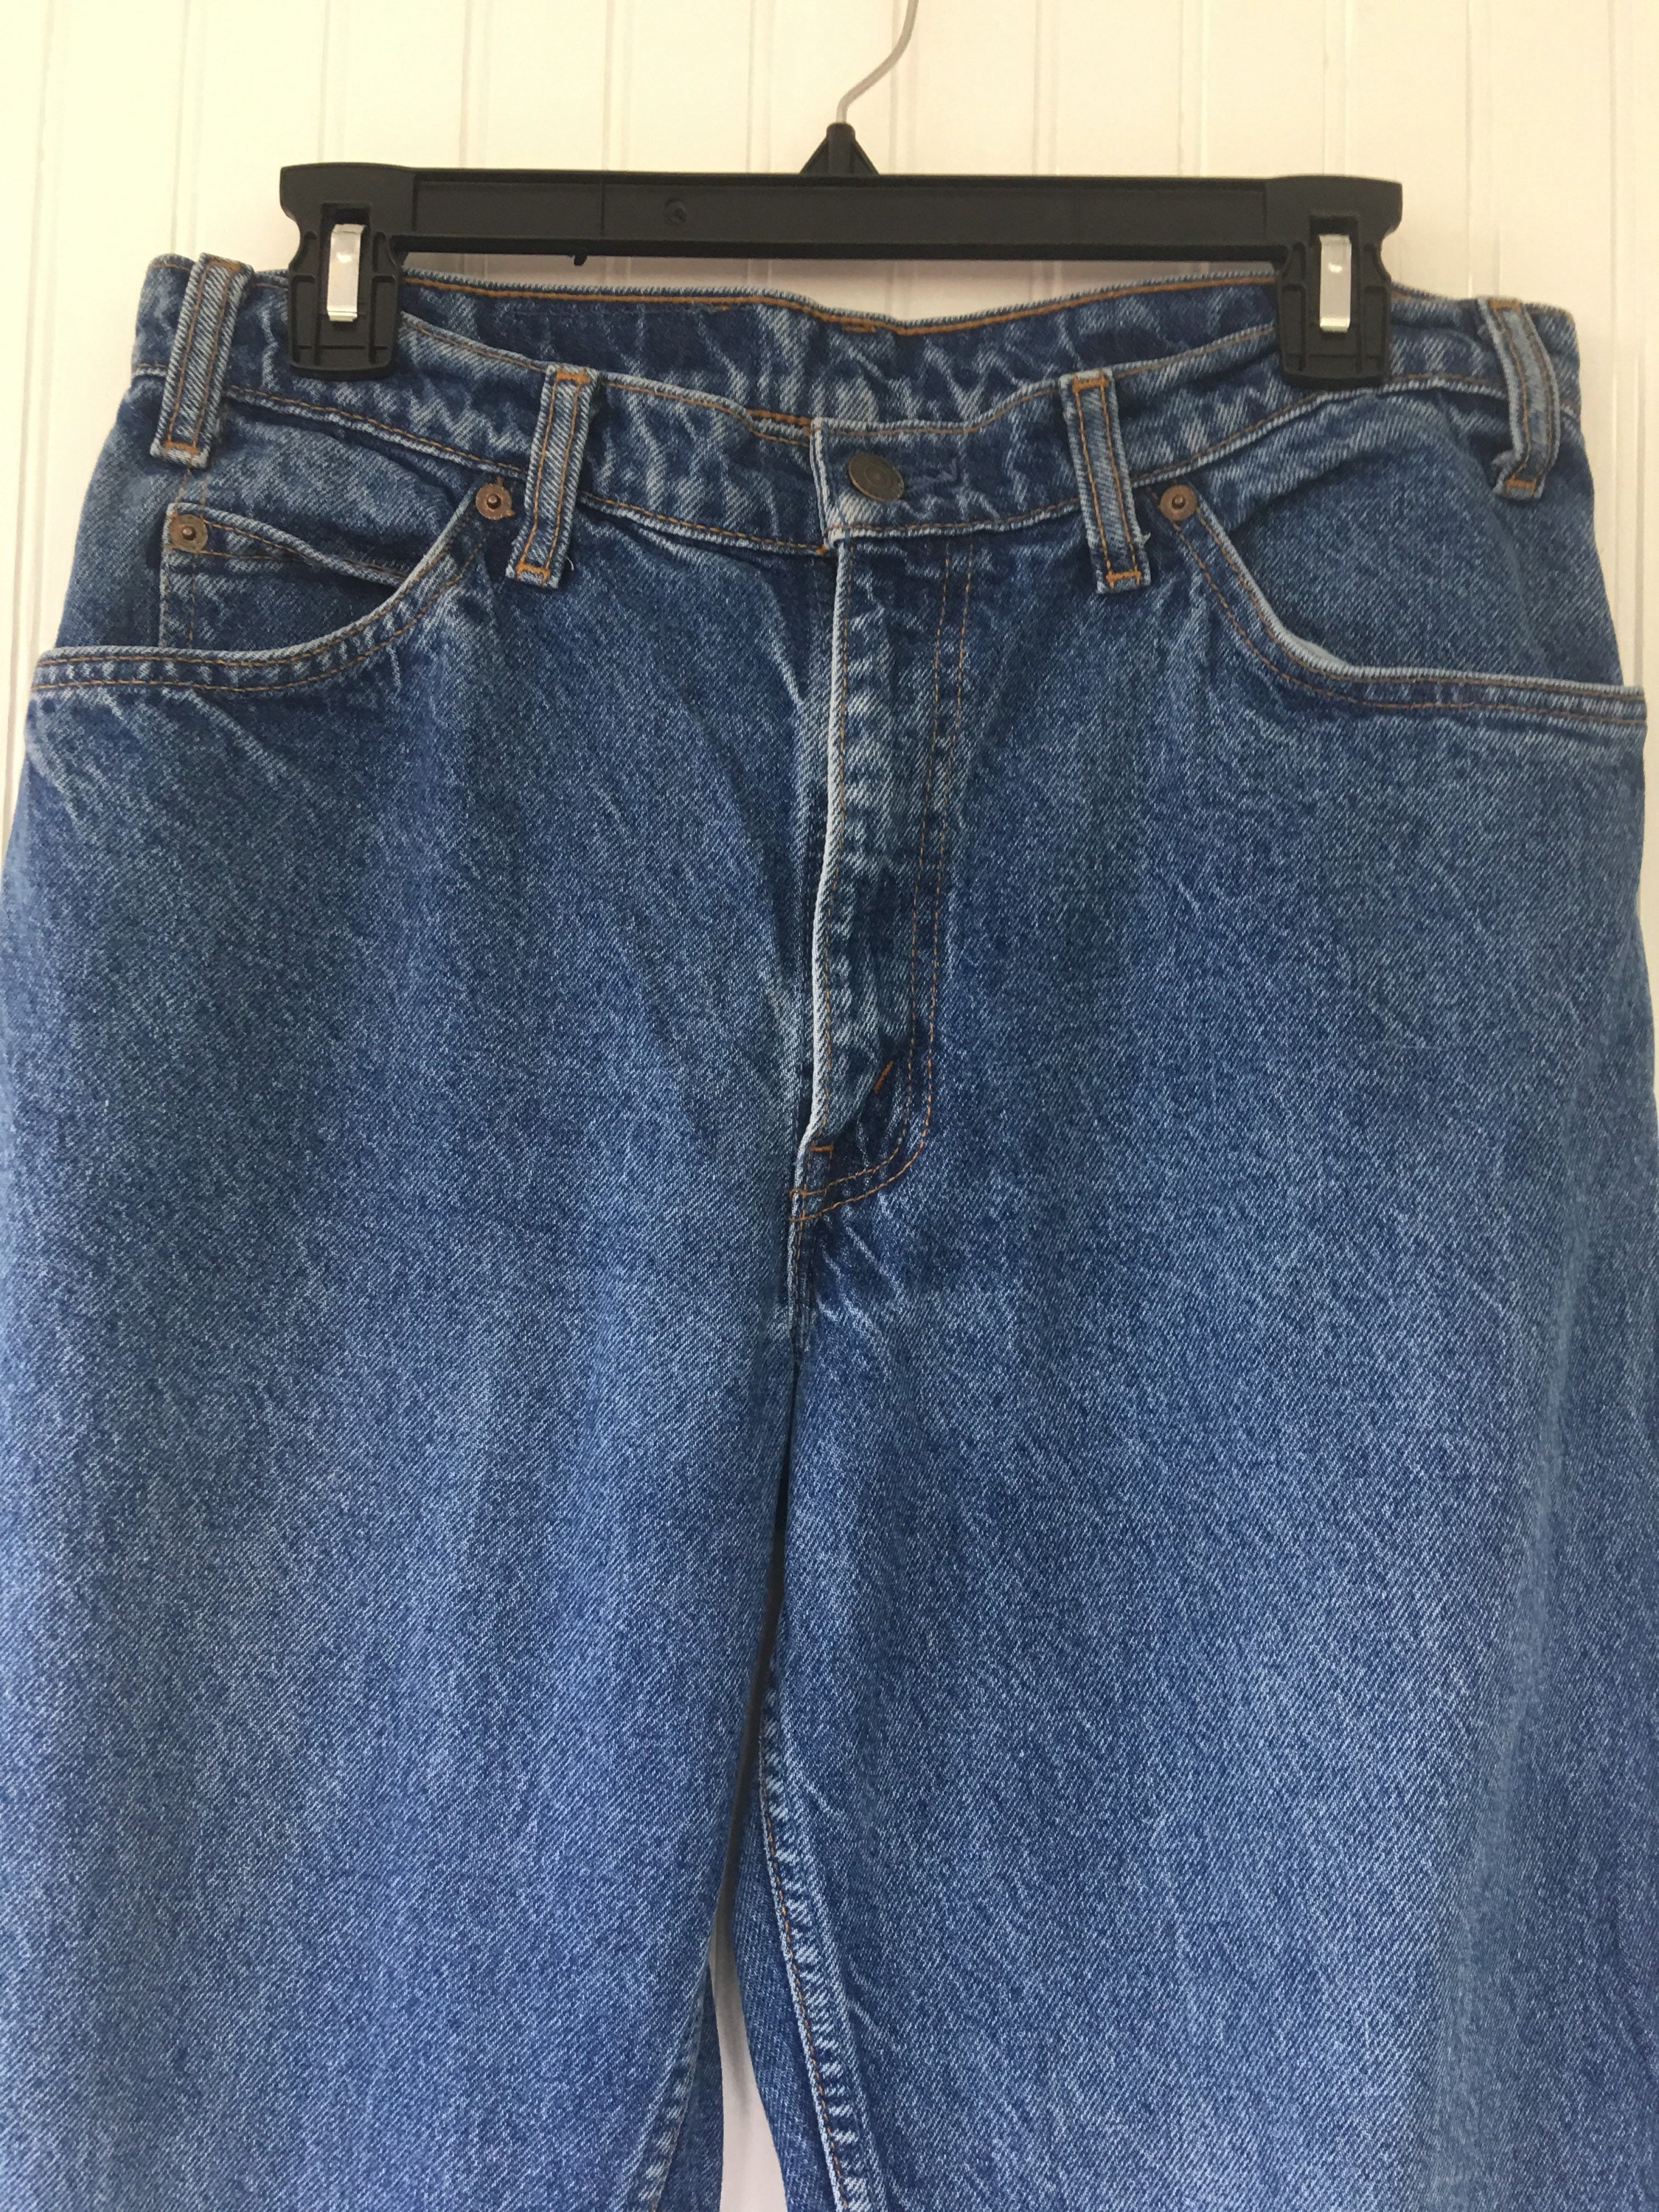 Vintage 90s Levis 550 Orange Tab Grunge Dark Blue Jeans Denim 32 x 32 ...